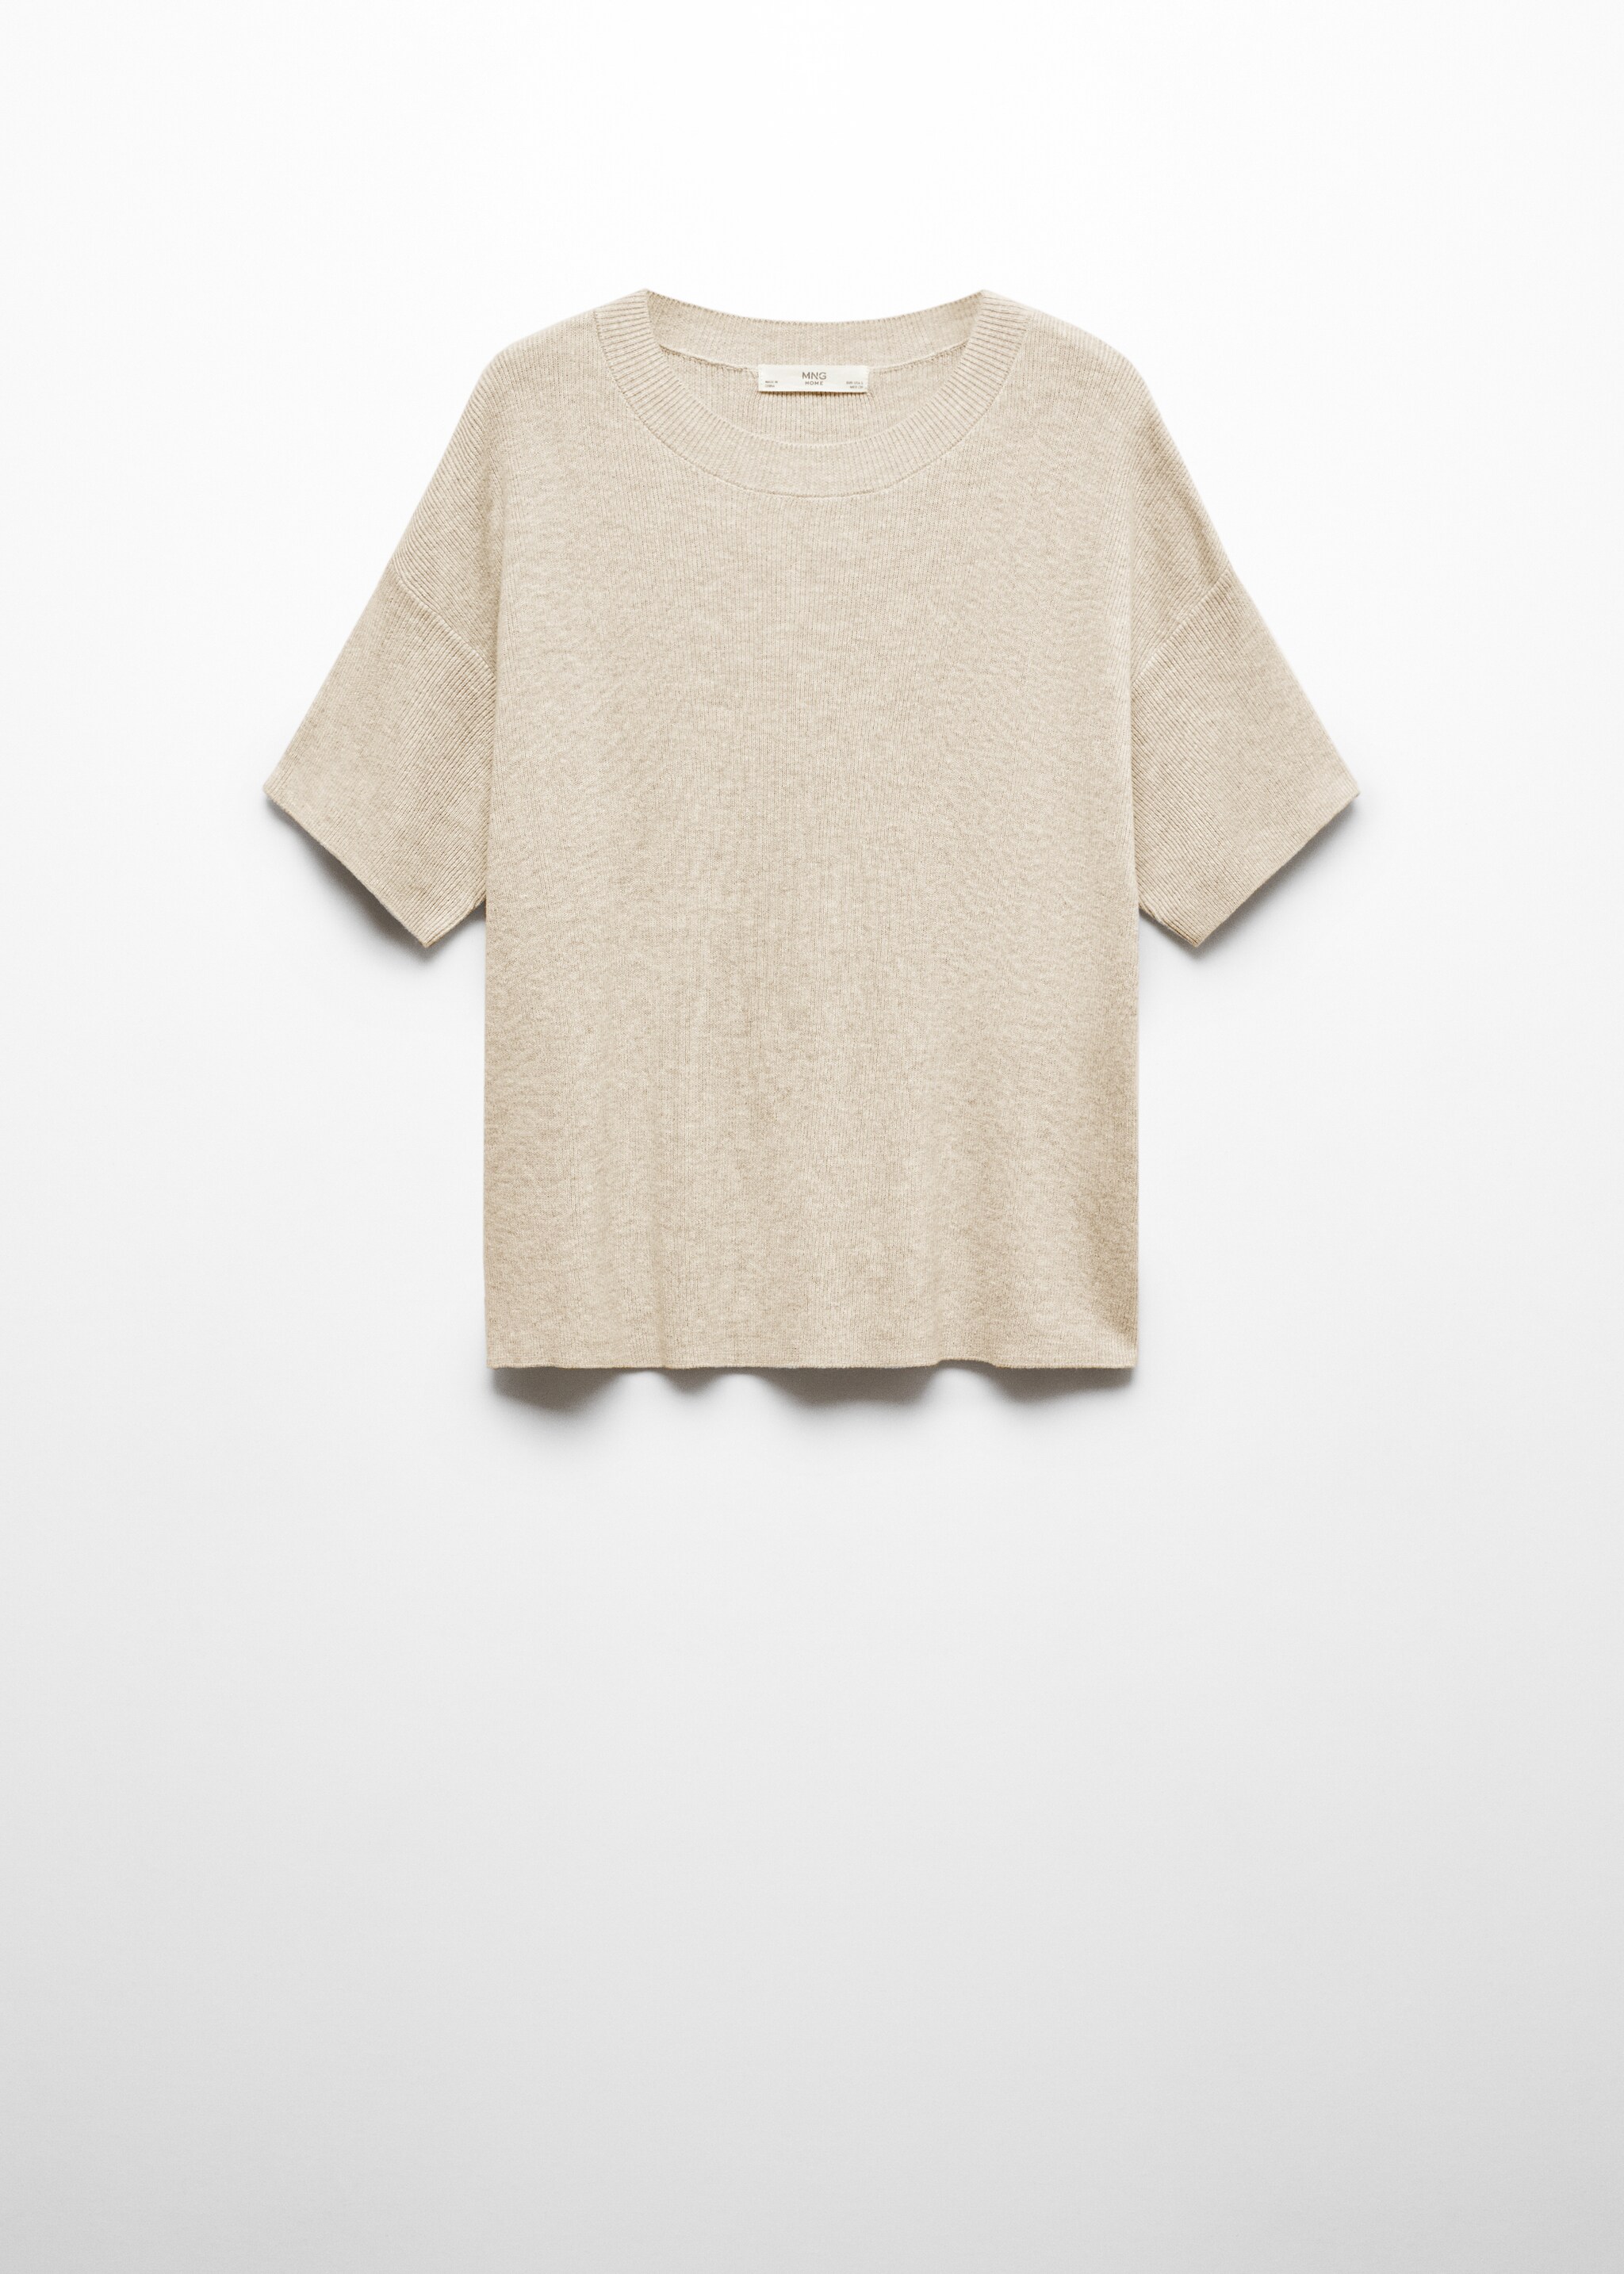 Camiseta punto algodón lino - Artículo sin modelo